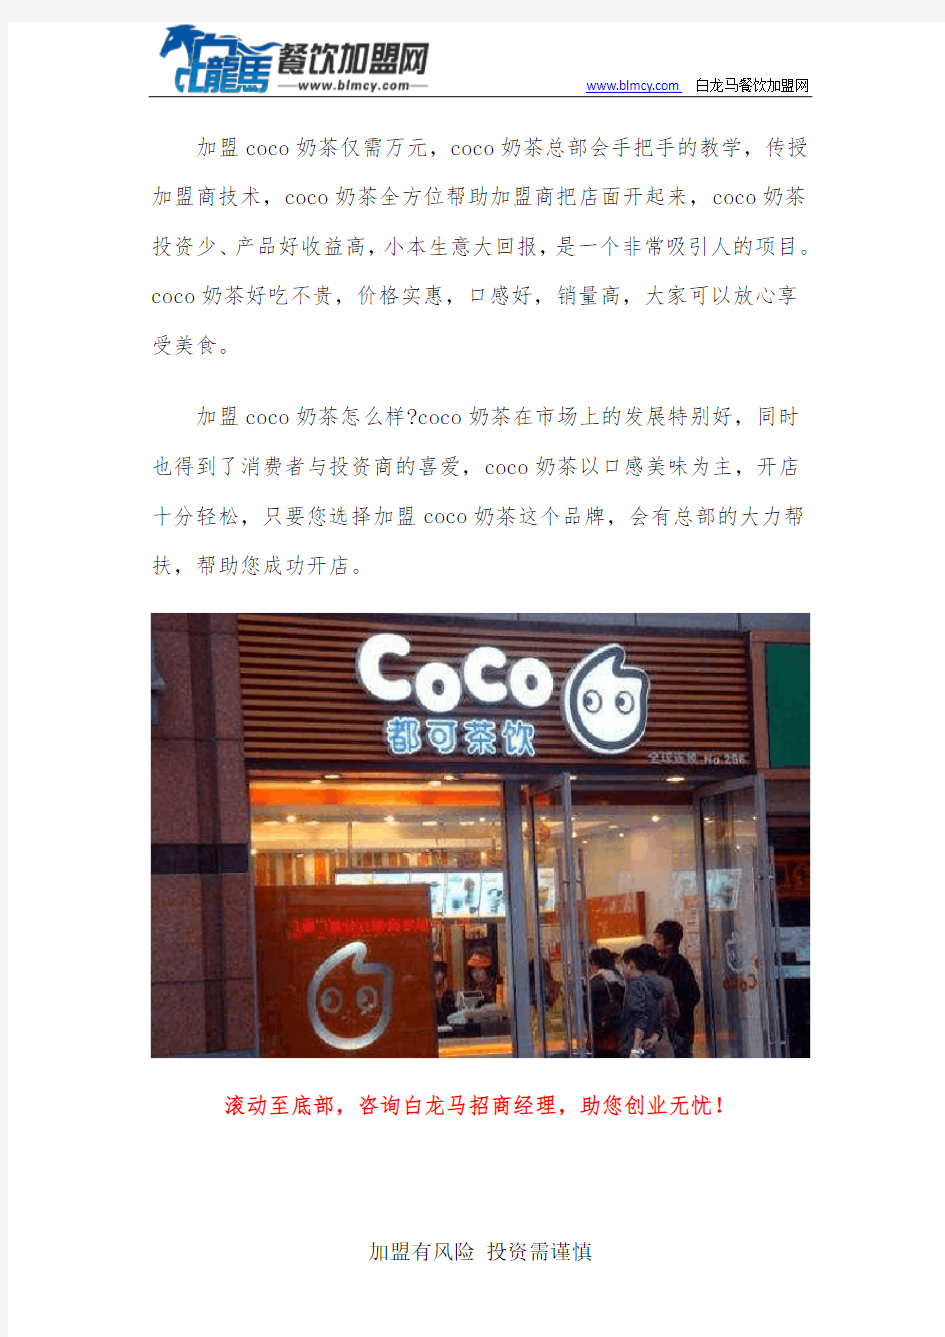 北京都可coco奶茶加盟好不好